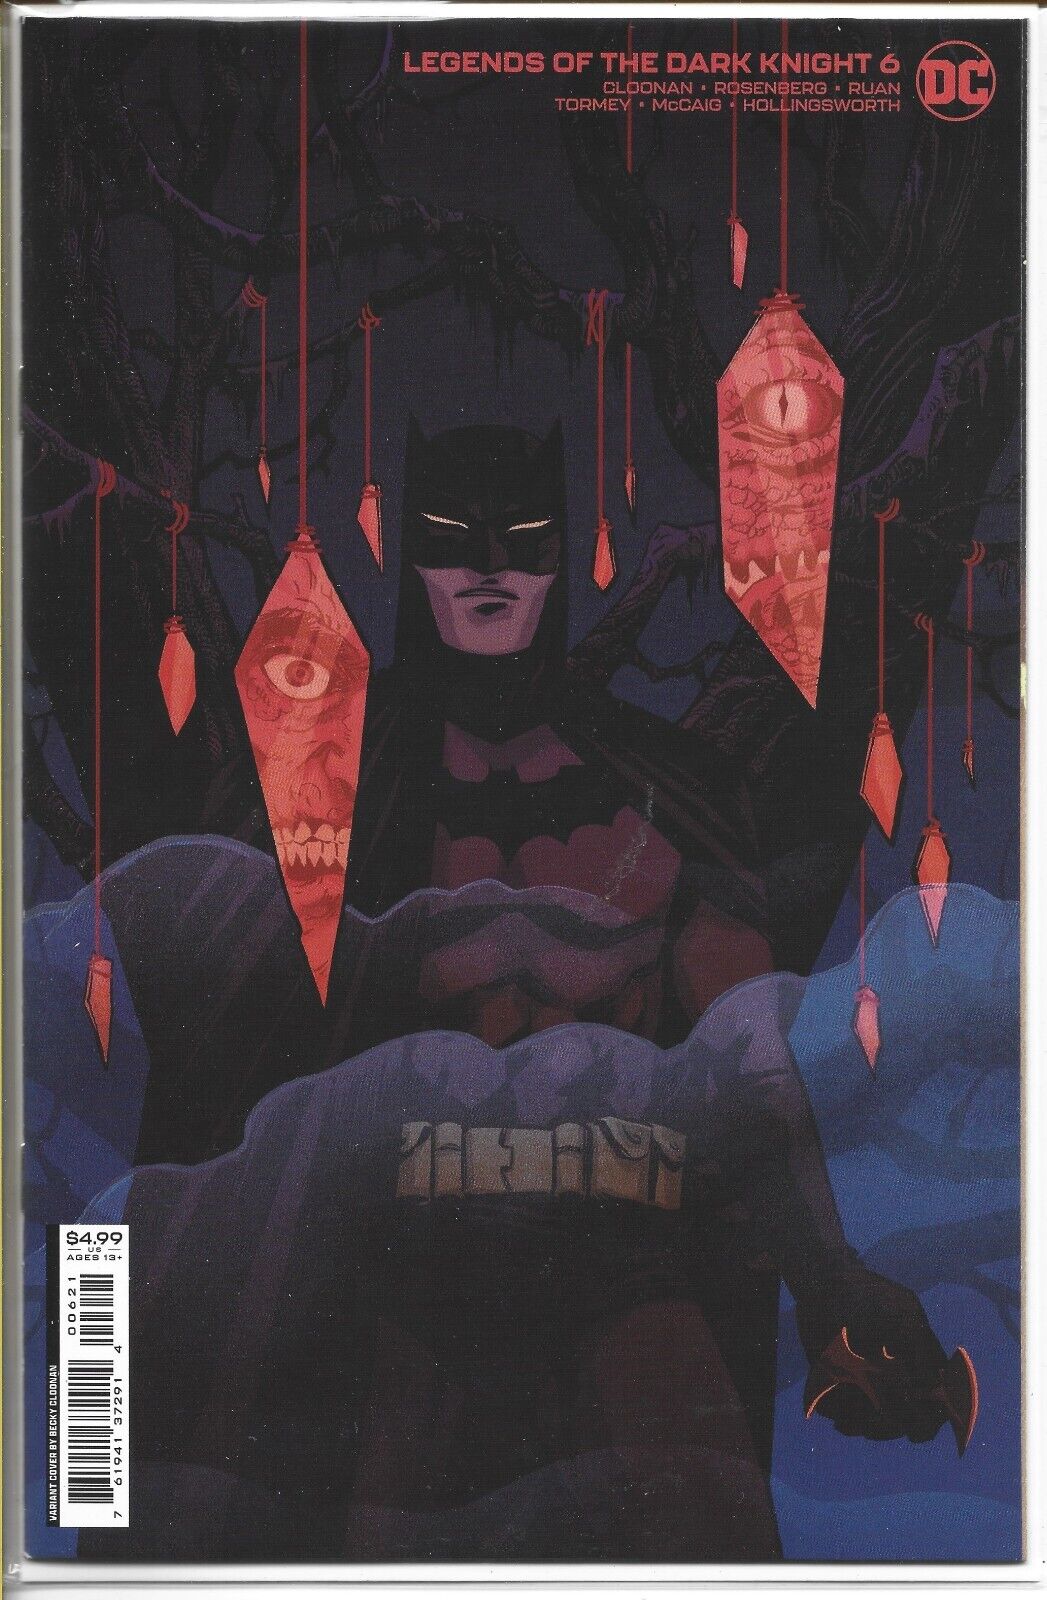 BATMAN LEGENDS OF THE DARK KNIGHT #6 COVER B DC COMICS 2021 NEW UNREAD BAG BOARD